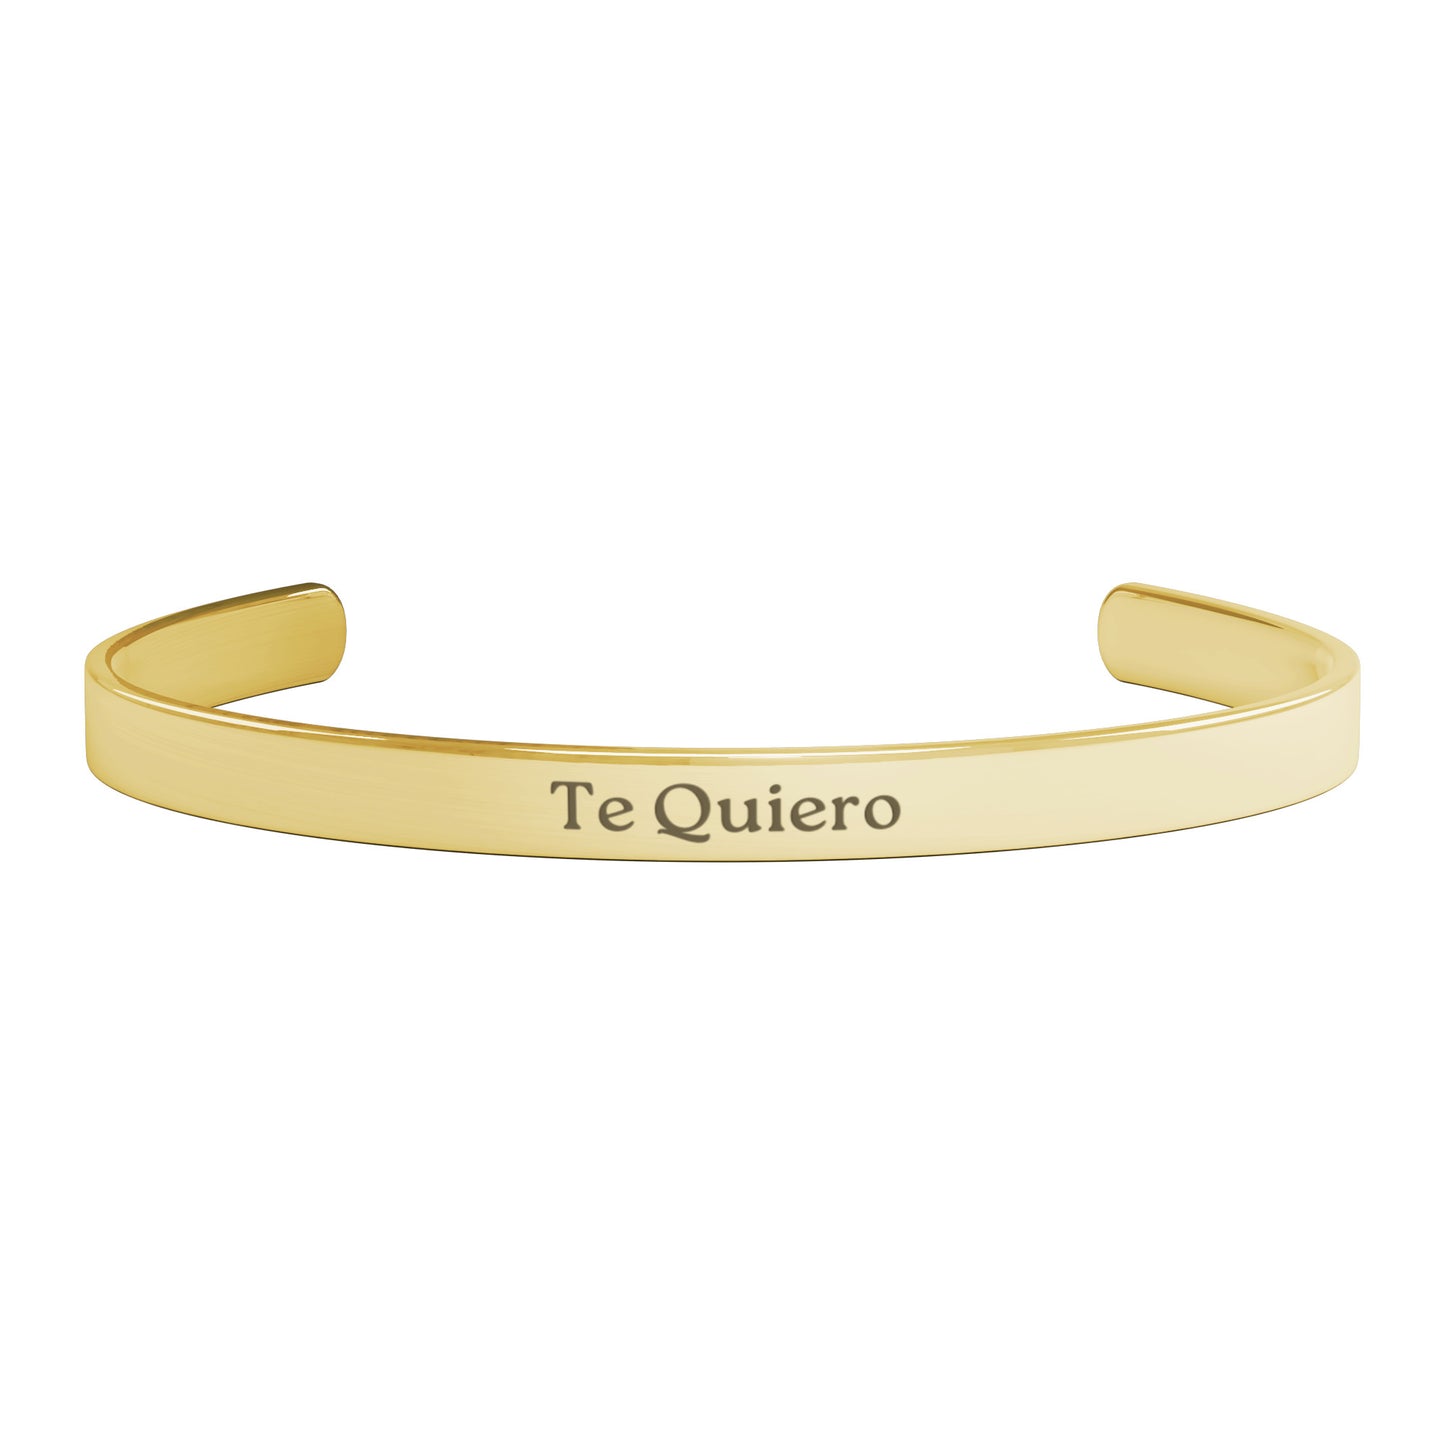 TE QUIERO (Spanish - I love You )